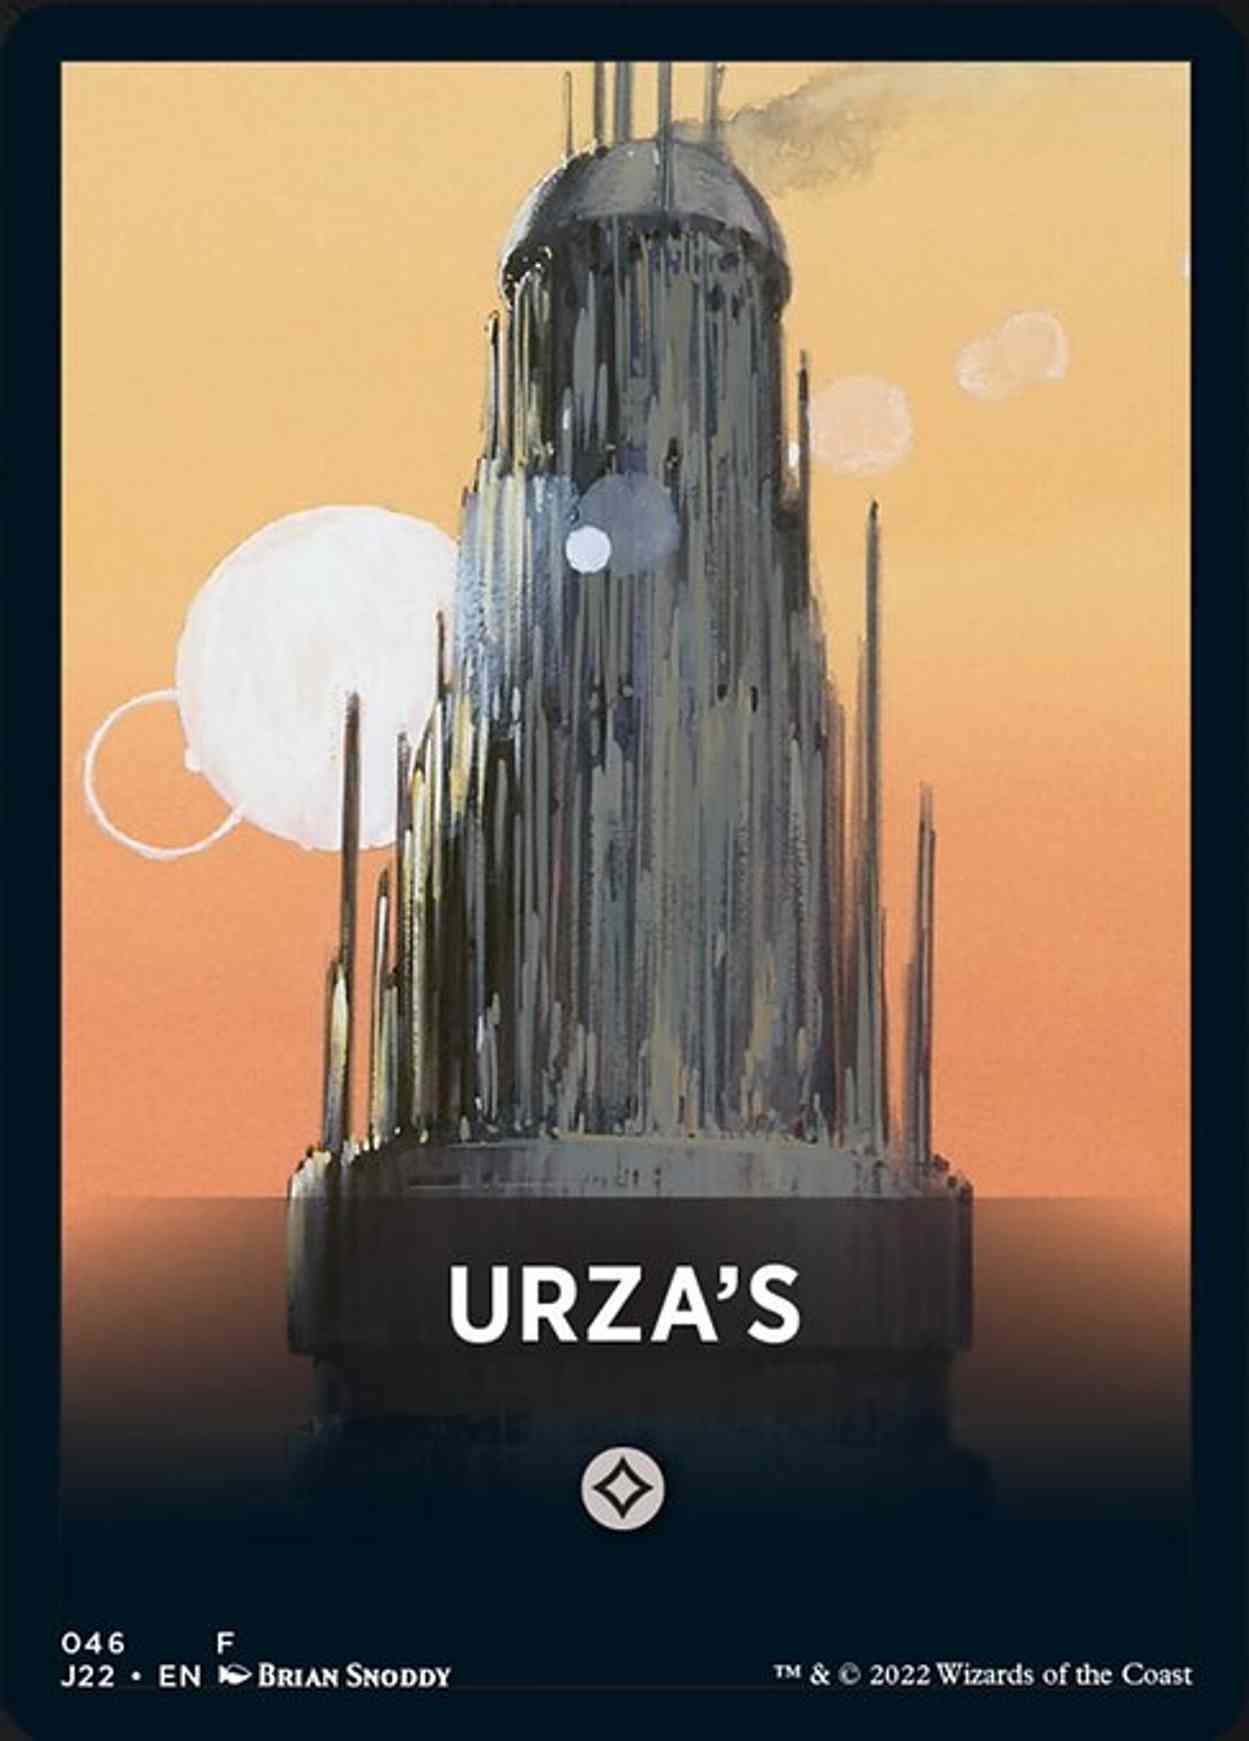 Urza's Theme Card magic card front